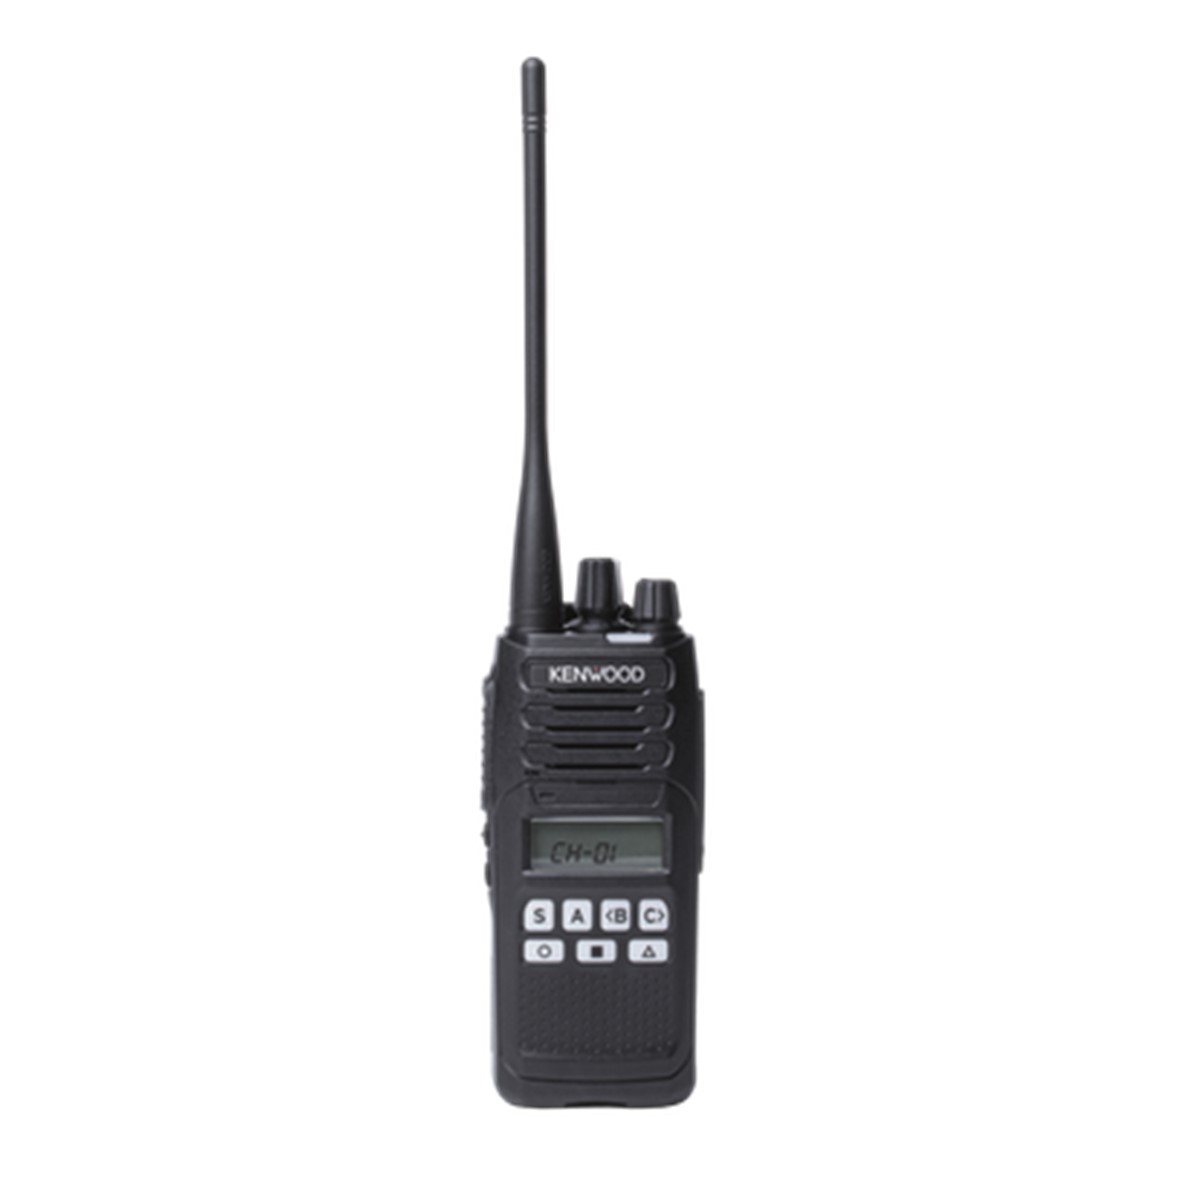 Radio KENWOOD NX-1300 Digital UHF 400-470 MHz con pantalla y teclado limitado